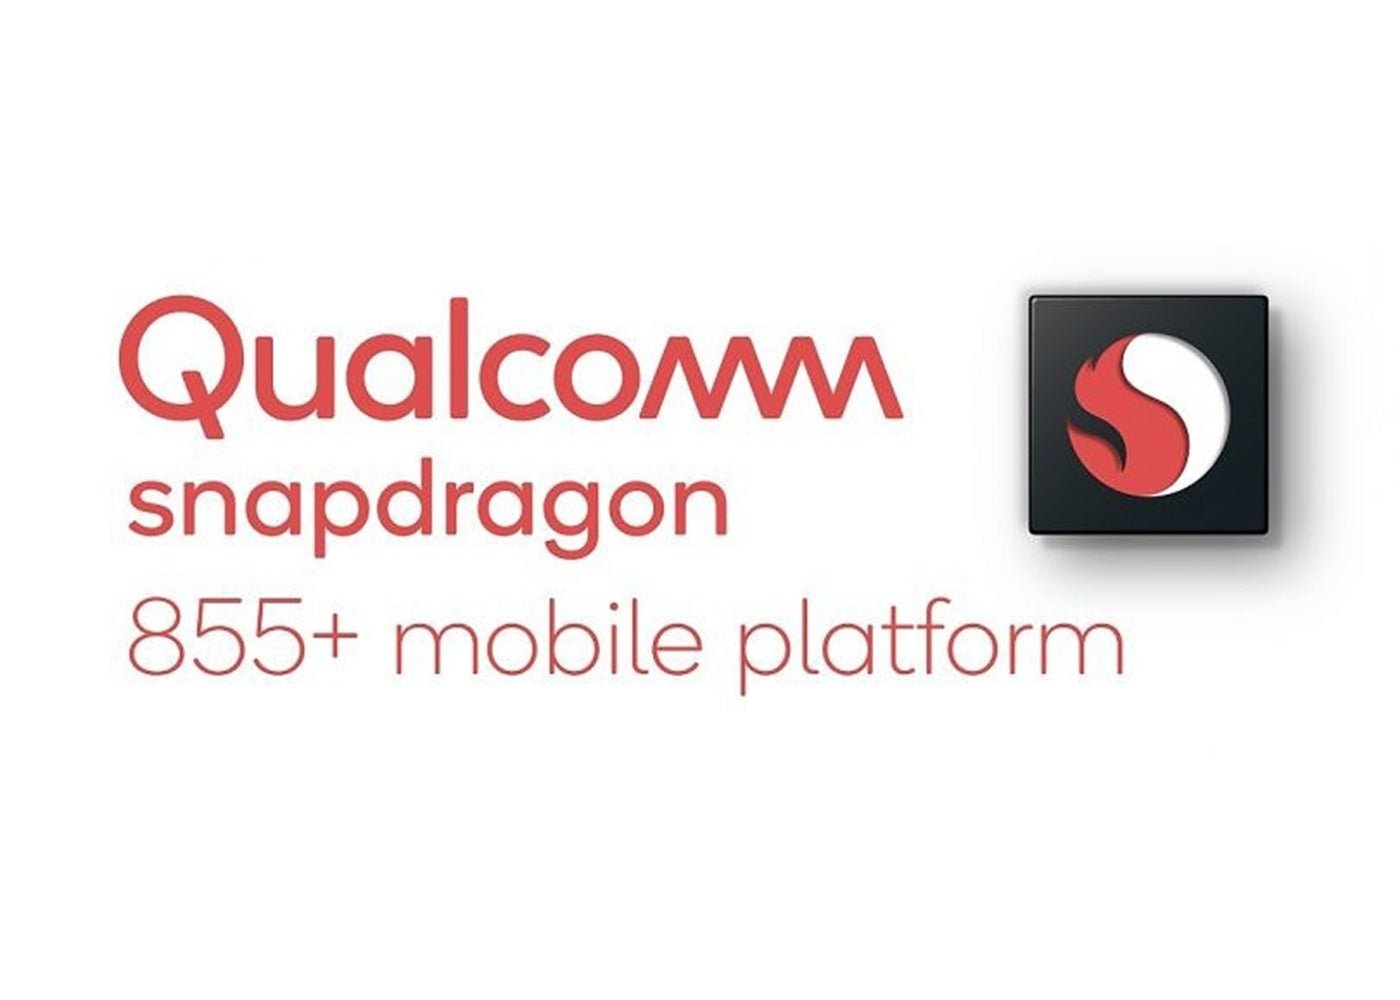 Nuevo Qualcomm Snapdragon 855+: toda la información